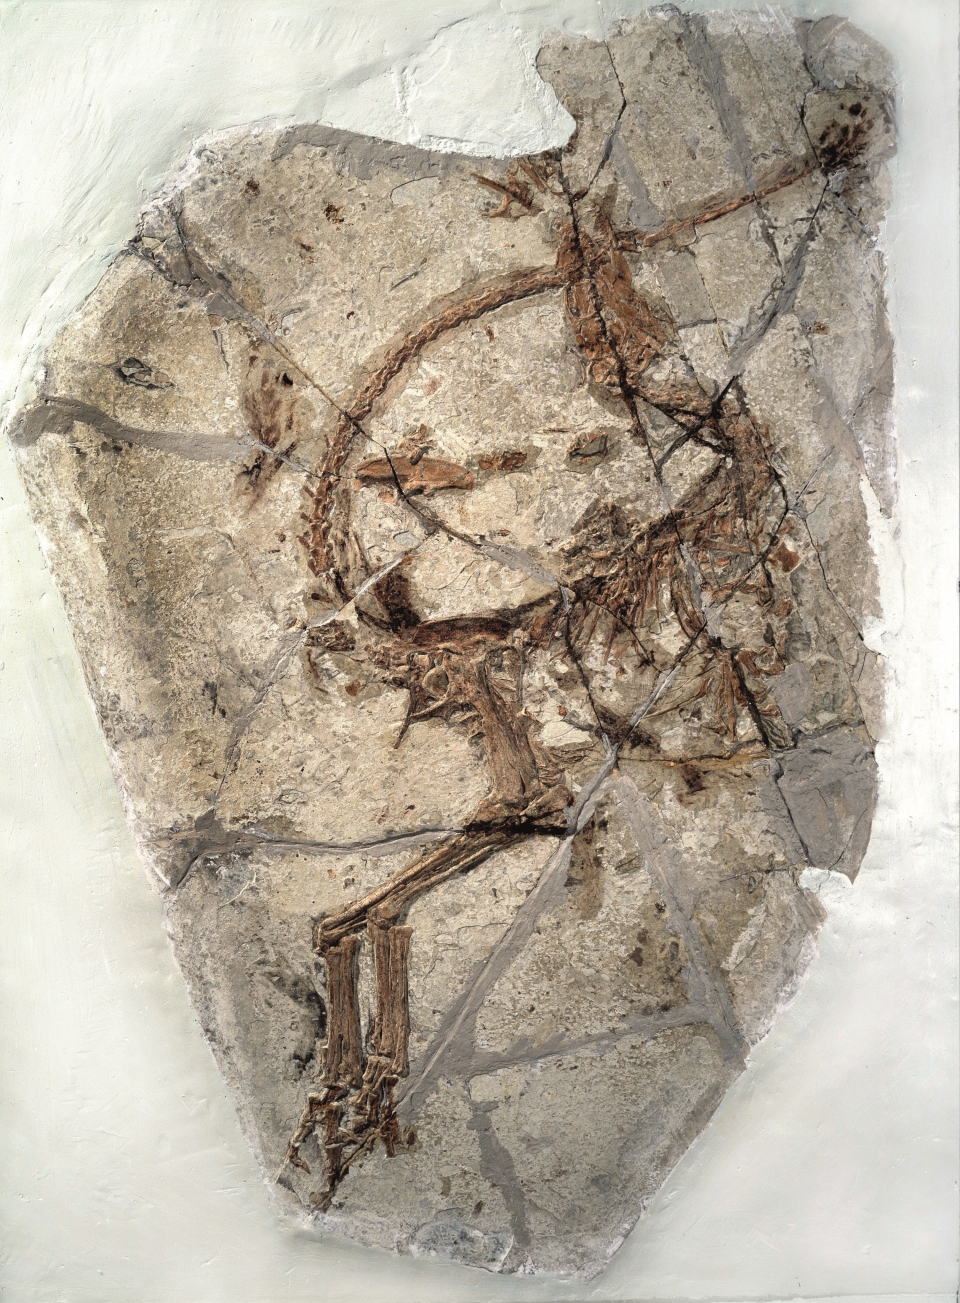 깃털의 증거는 화석화된 육식동물의 잔해에서 볼 수 있다